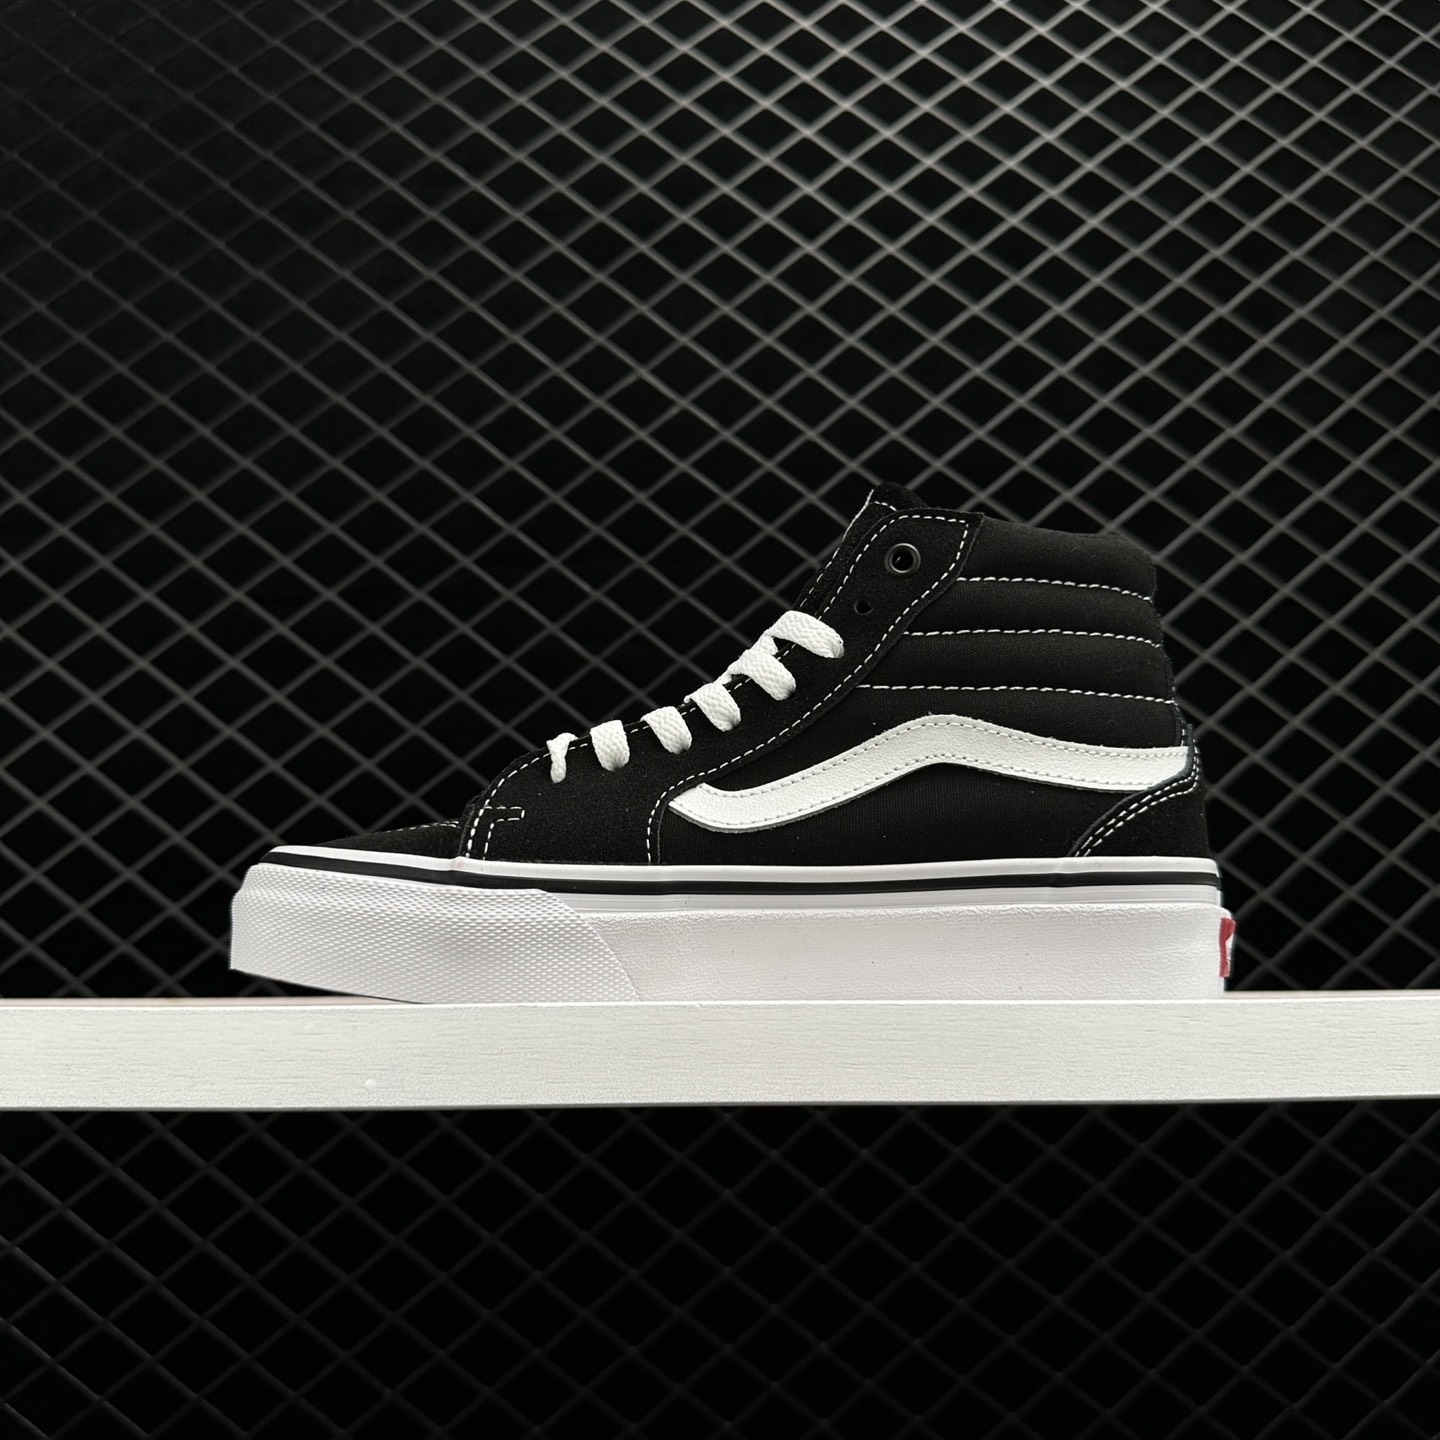 Vans Filmore Hi Platform Black White Skate Shoes VN0A5EM7187 - Stylish Elevated Footwear for Skateboarding and Beyond